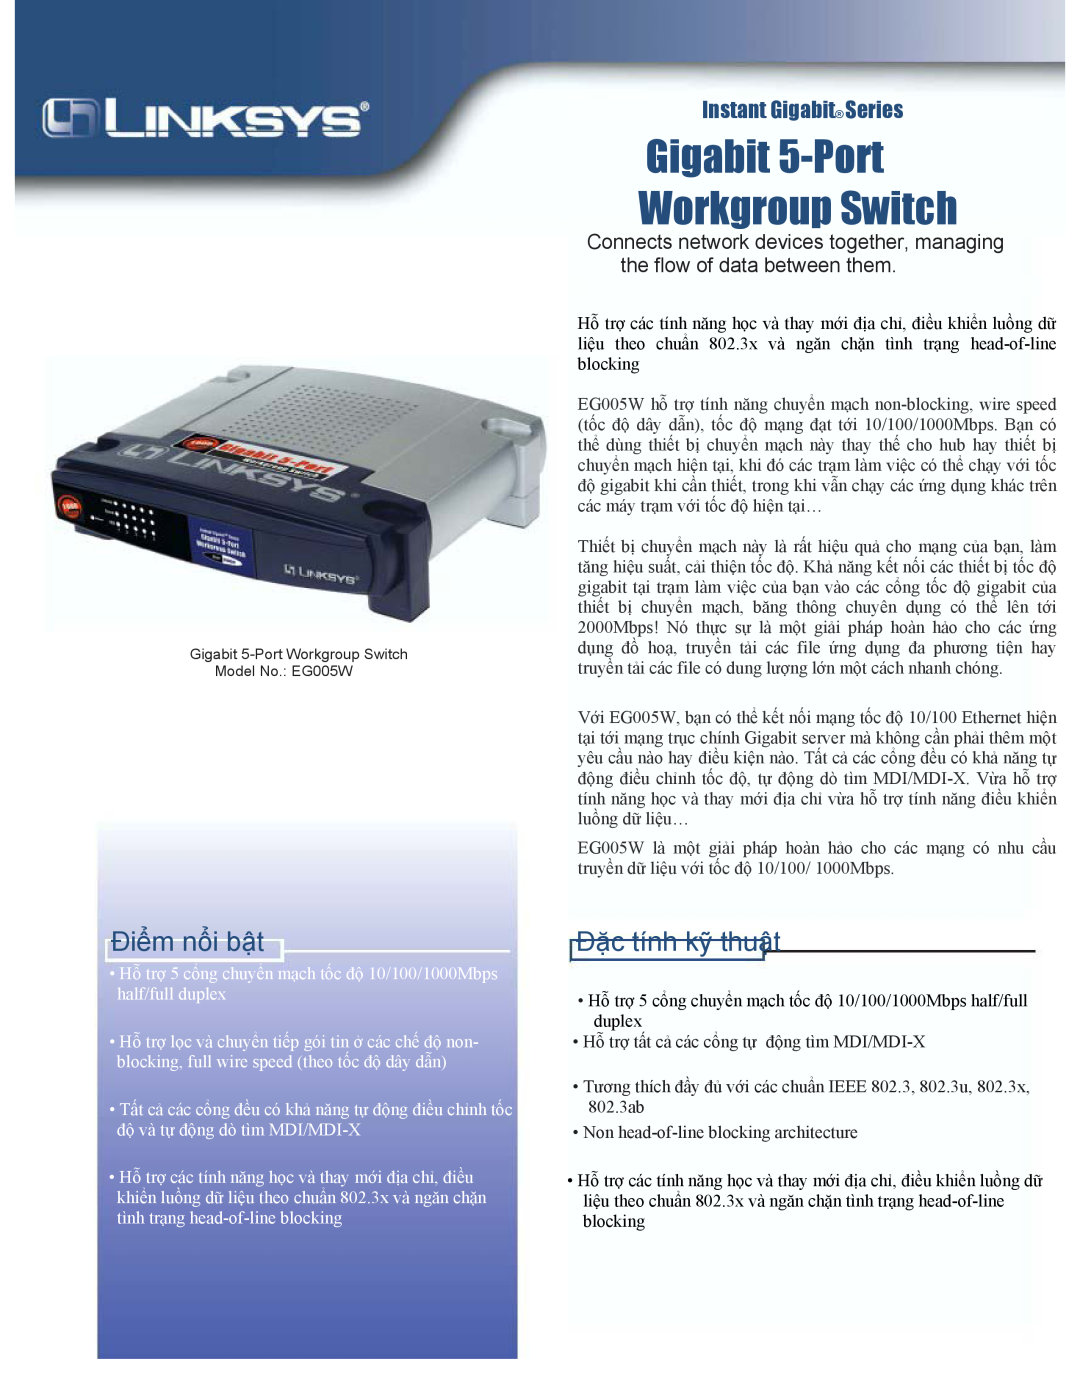 Linksys EG005W manual Gigabit 5-Port Workgroup Switch, Điểm nổi bật, Đặc tính kỹ thuật, Instant Gigabit Series 